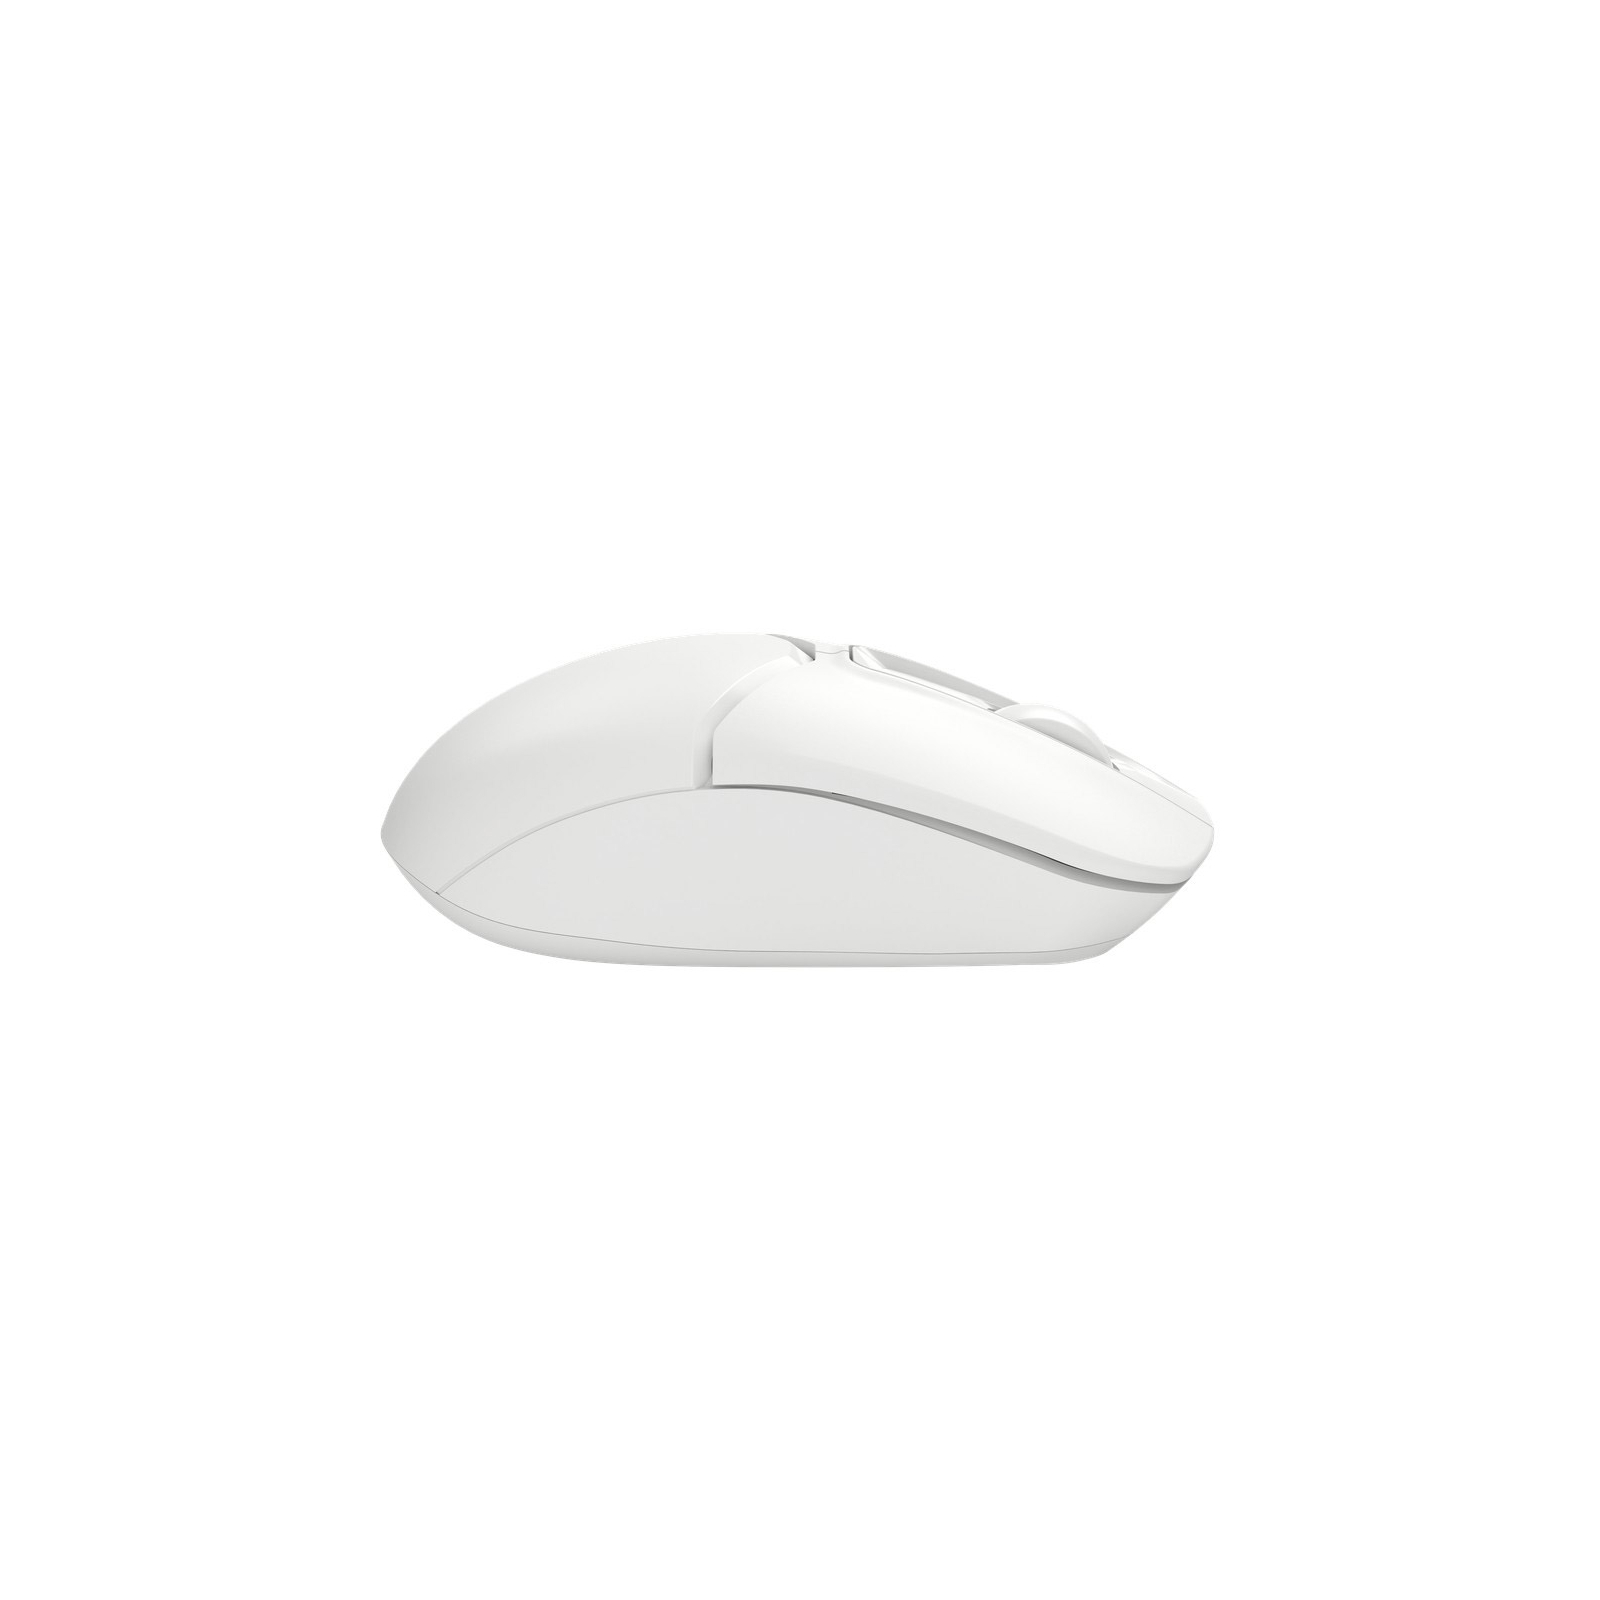 Мышка A4Tech FB12S Wireless/Bluetooth White (FB12S White) изображение 5